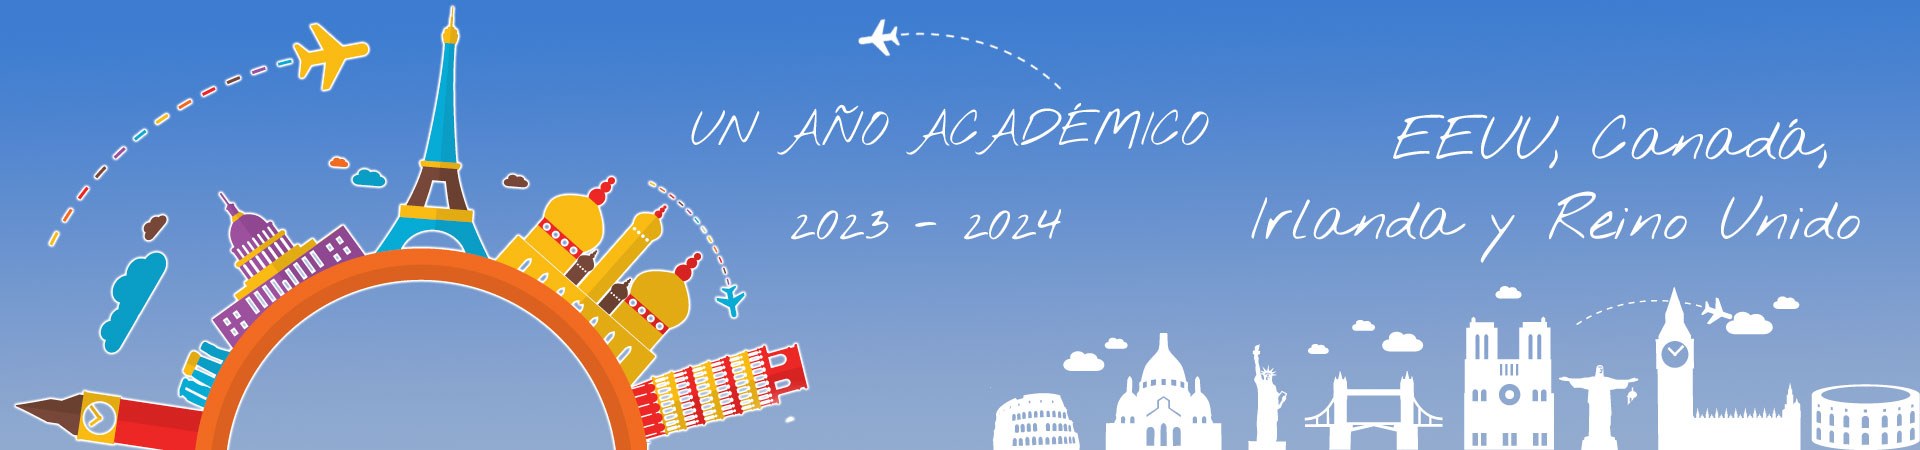 Año academico 2023-24